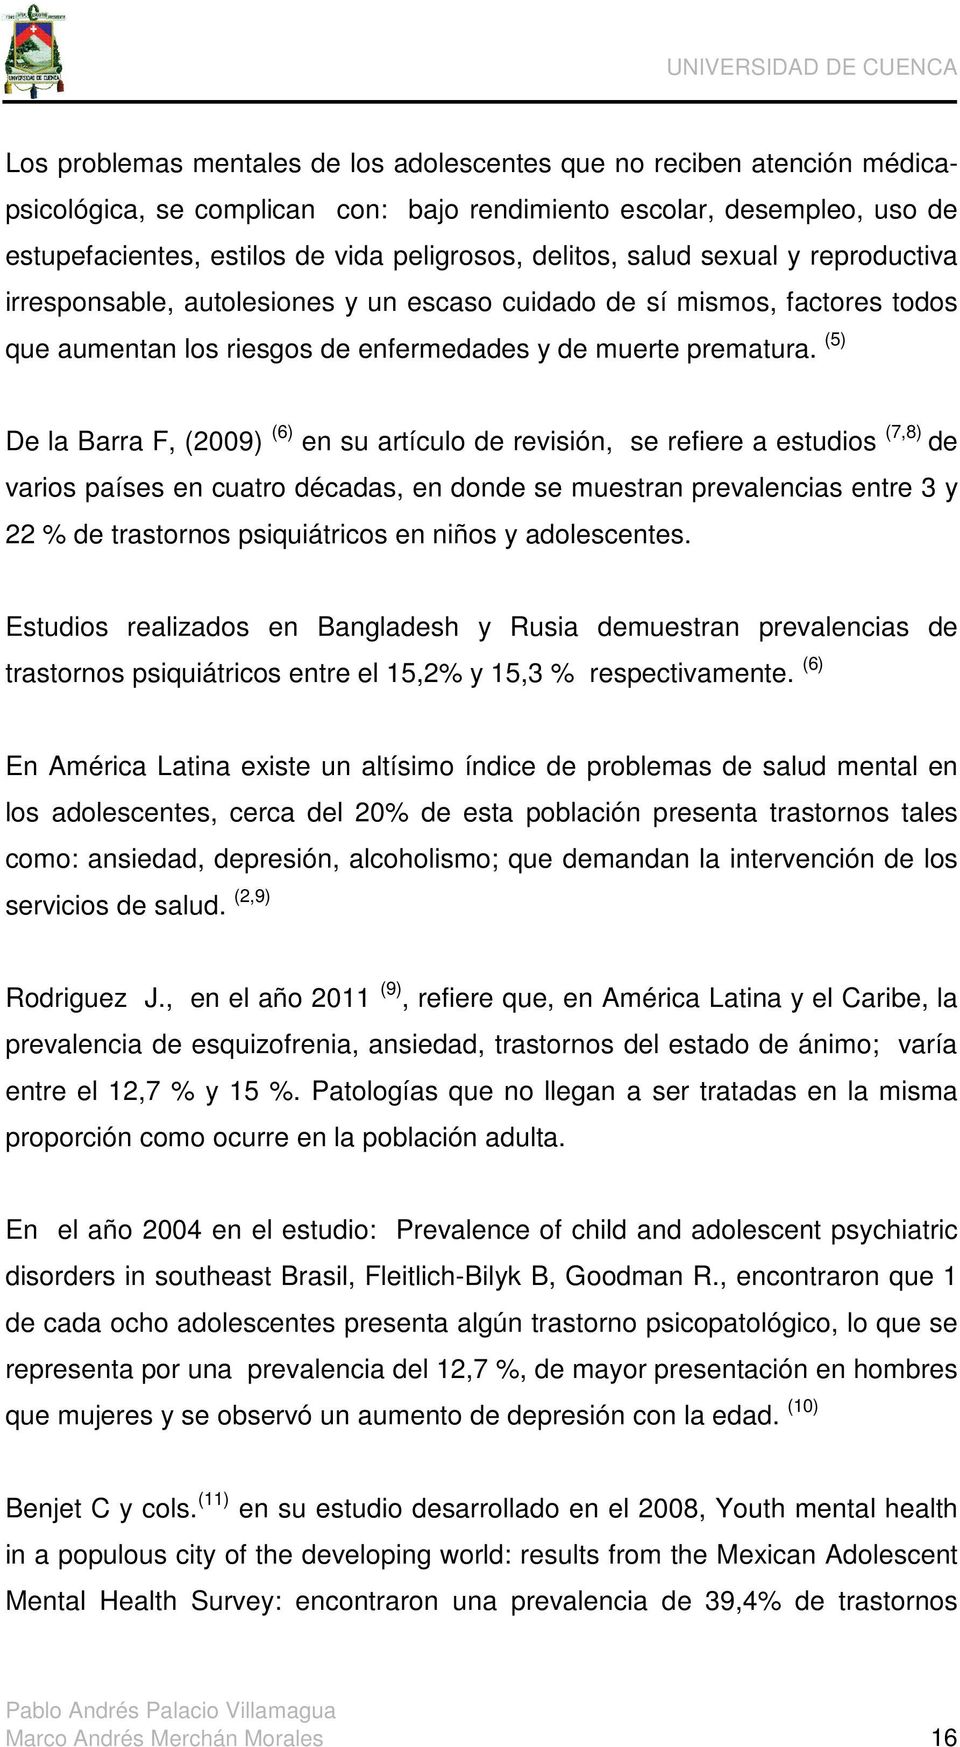 (5) De la Barra F, (2009) (6) en su artículo de revisión, se refiere a estudios (7,8) de varios países en cuatro décadas, en donde se muestran prevalencias entre 3 y 22 % de trastornos psiquiátricos